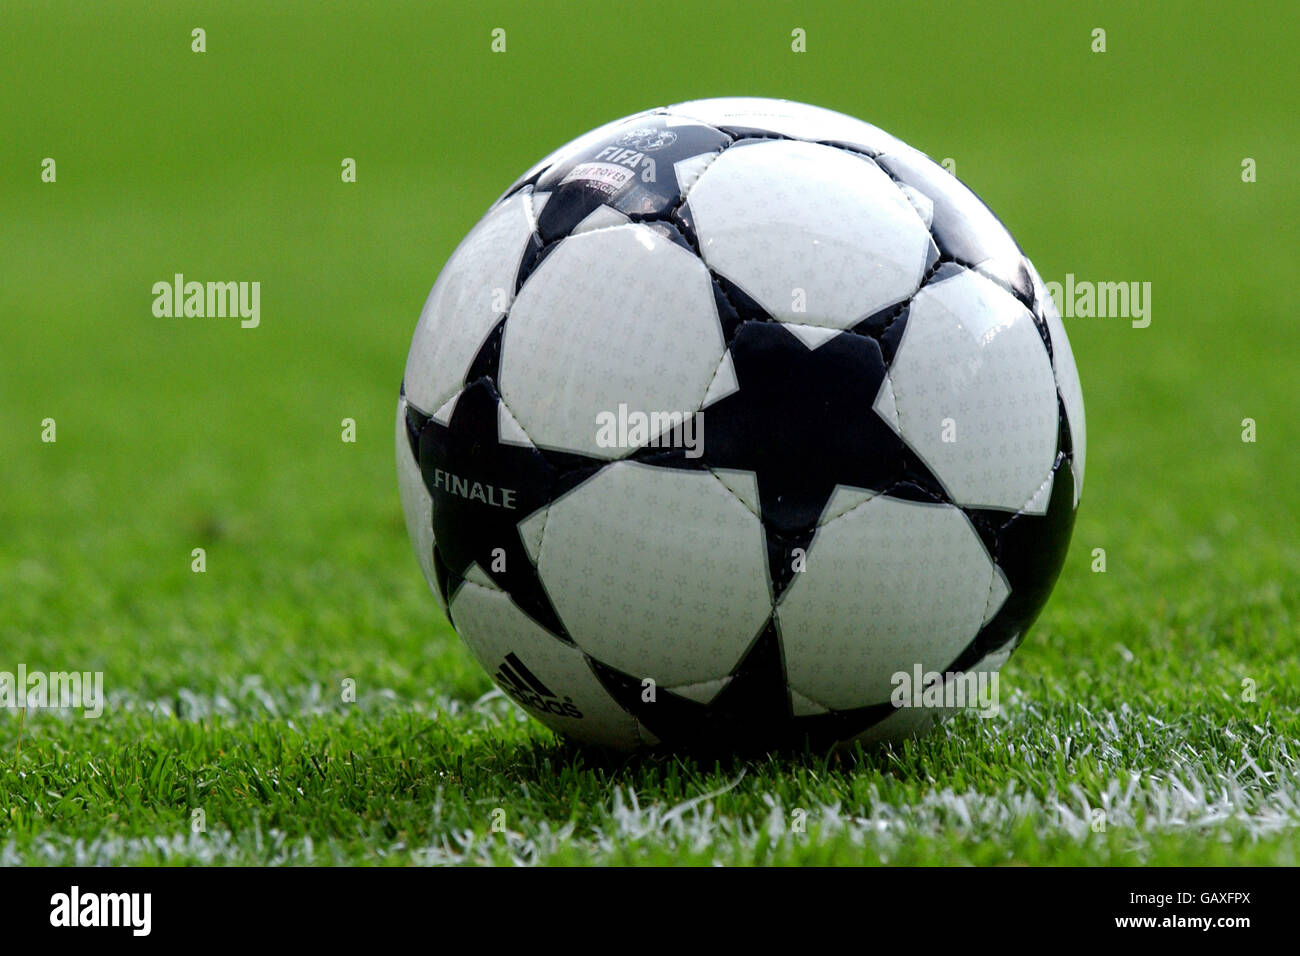 Fútbol - UEFA Champions League - Final - Juventus contra AC Milán. El balón  Adidas Finale Fotografía de stock - Alamy